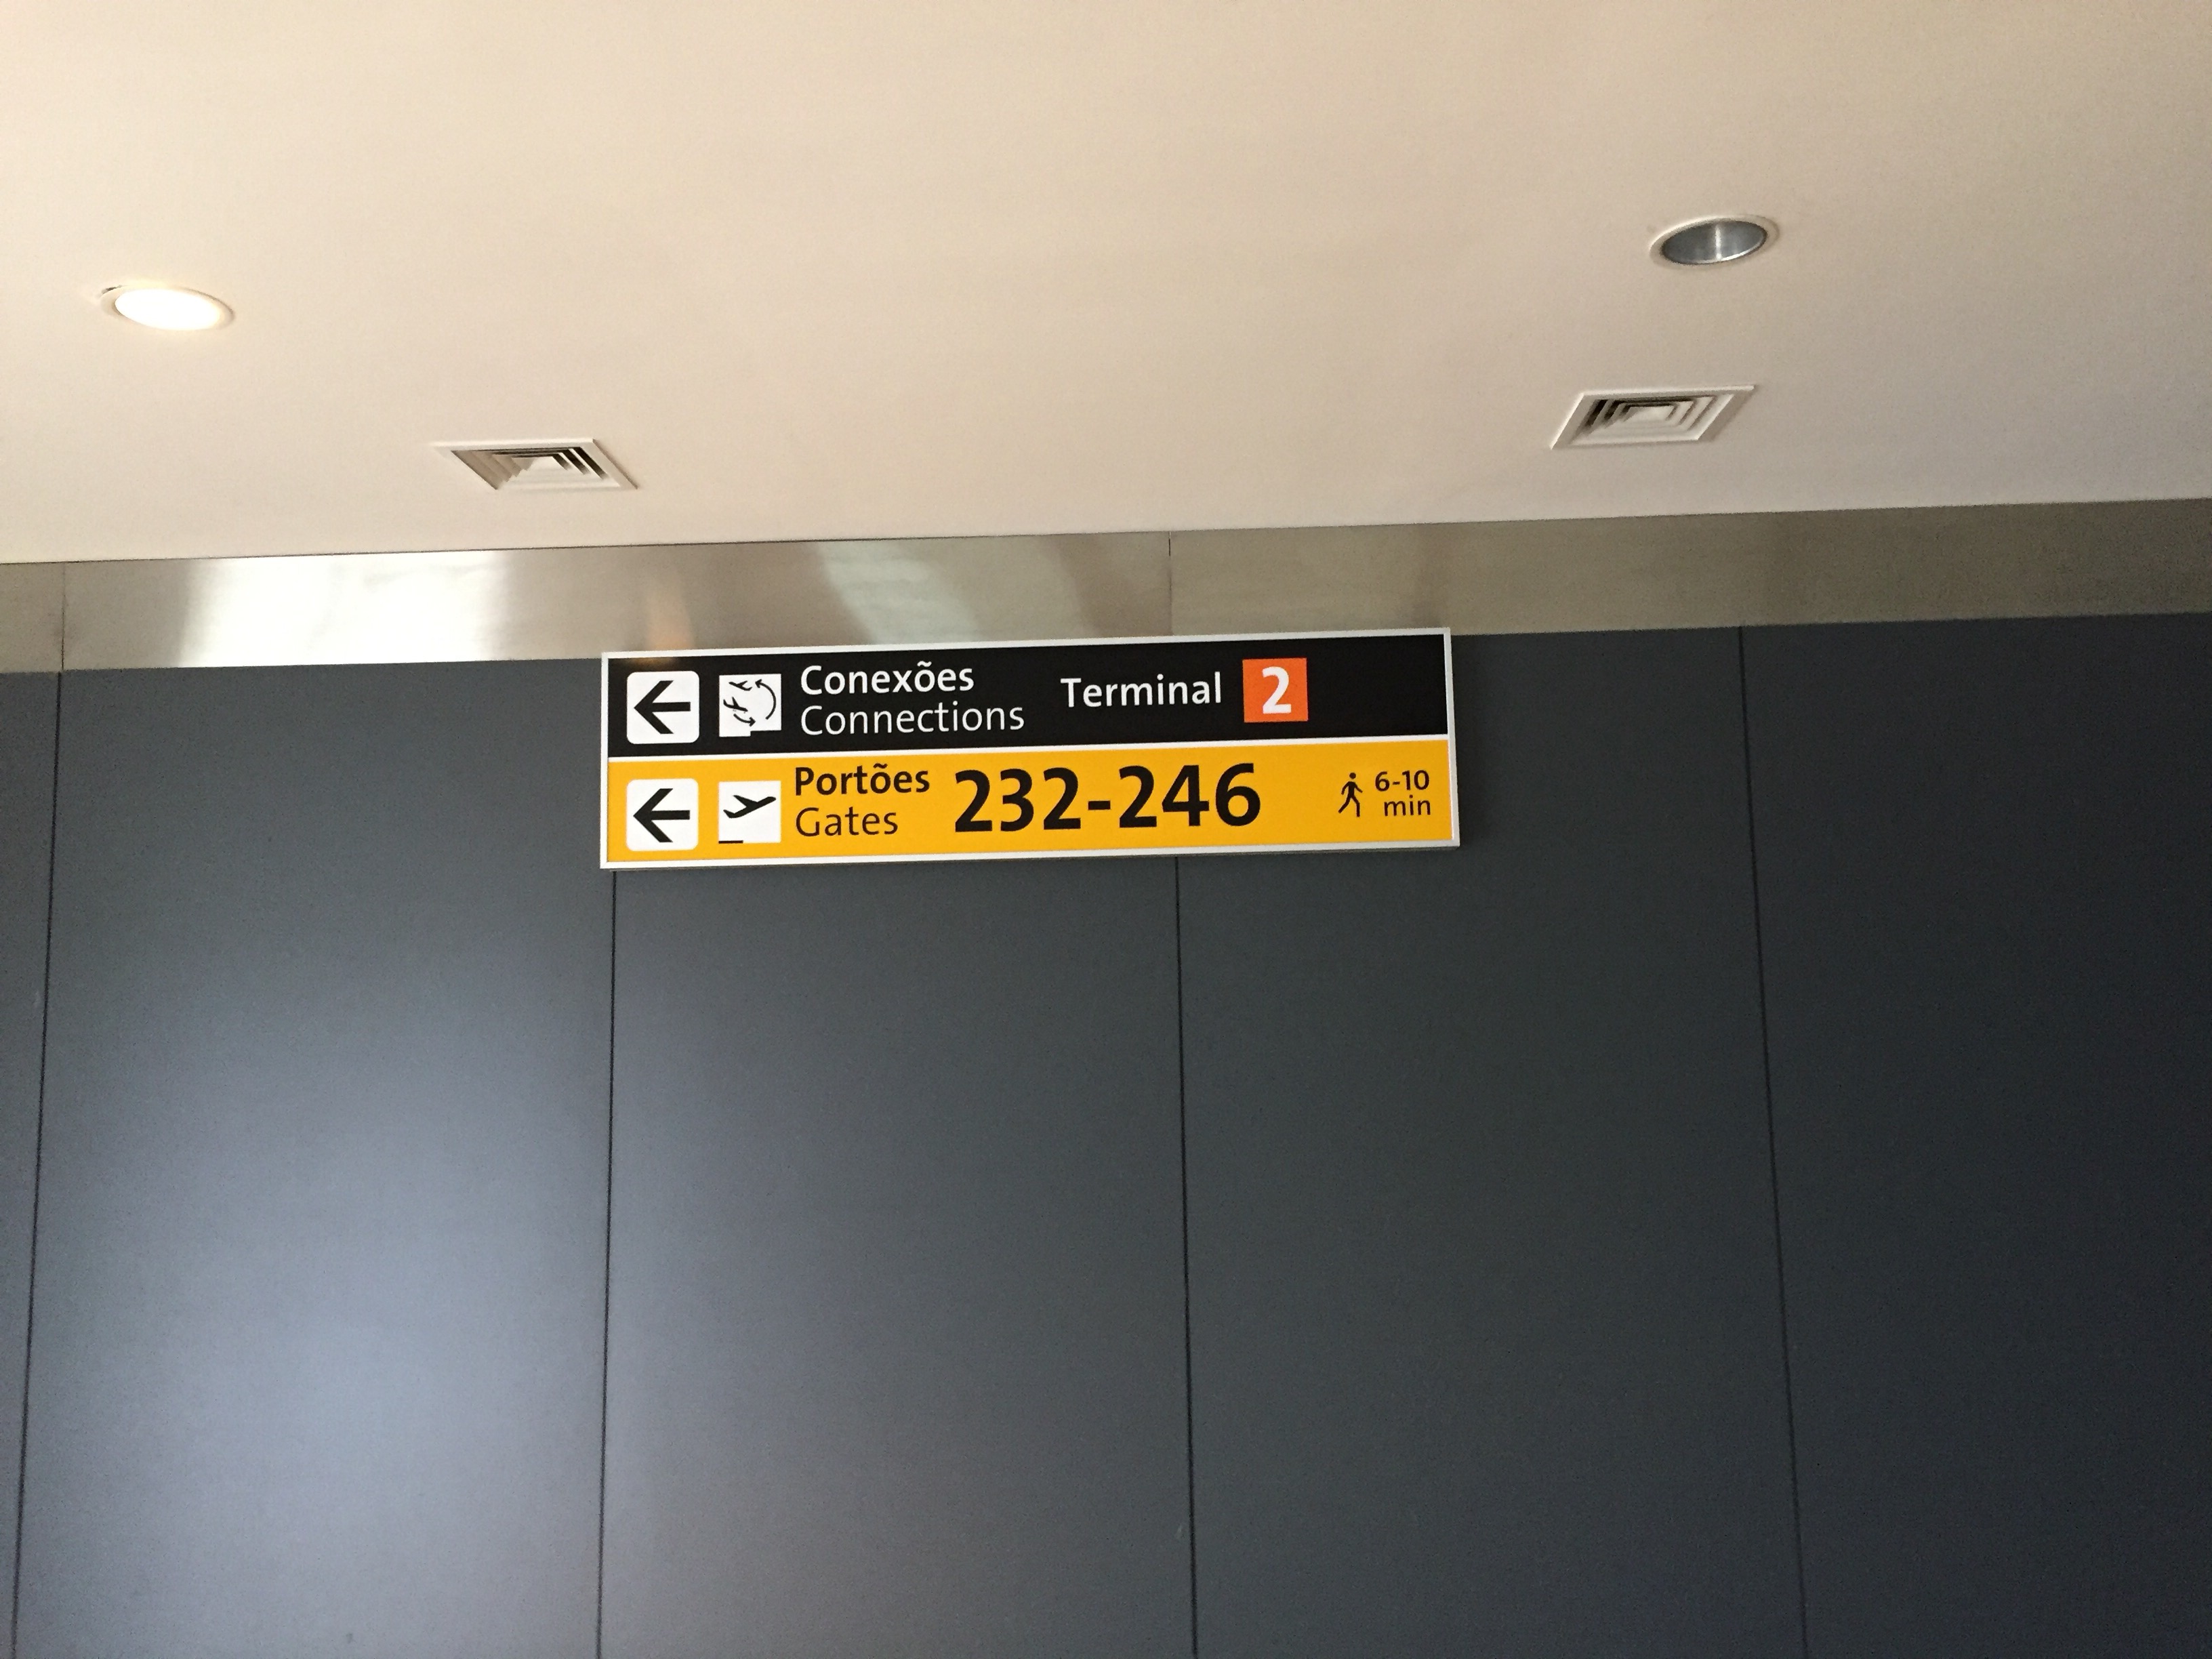 img 9600 - Cambio de Terminales en Guarulhos (San Pablo) para los vuelos regionales y sus caóticas consecuencias